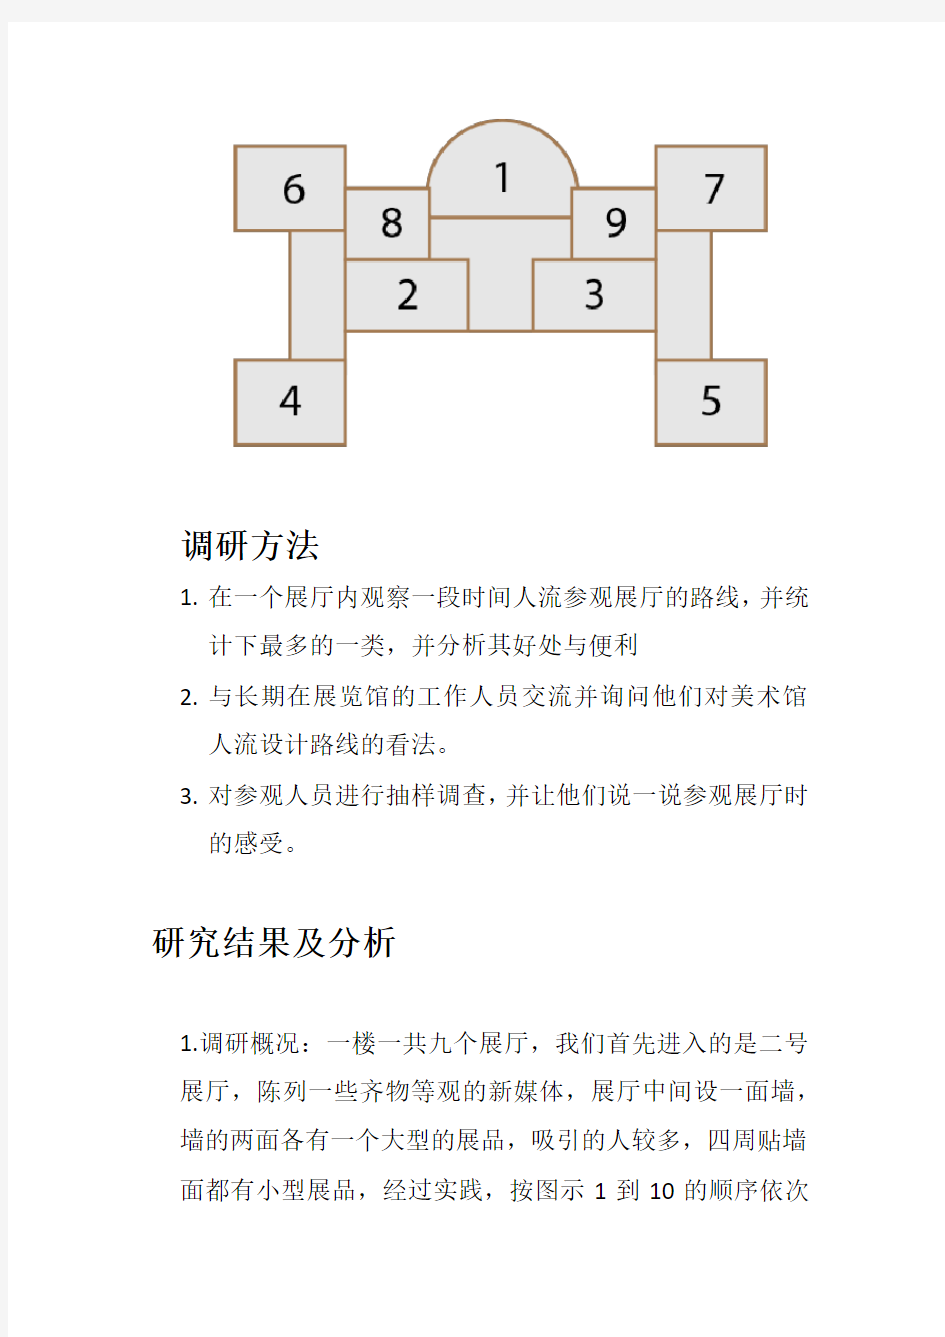 中国美术馆人流路线分析1